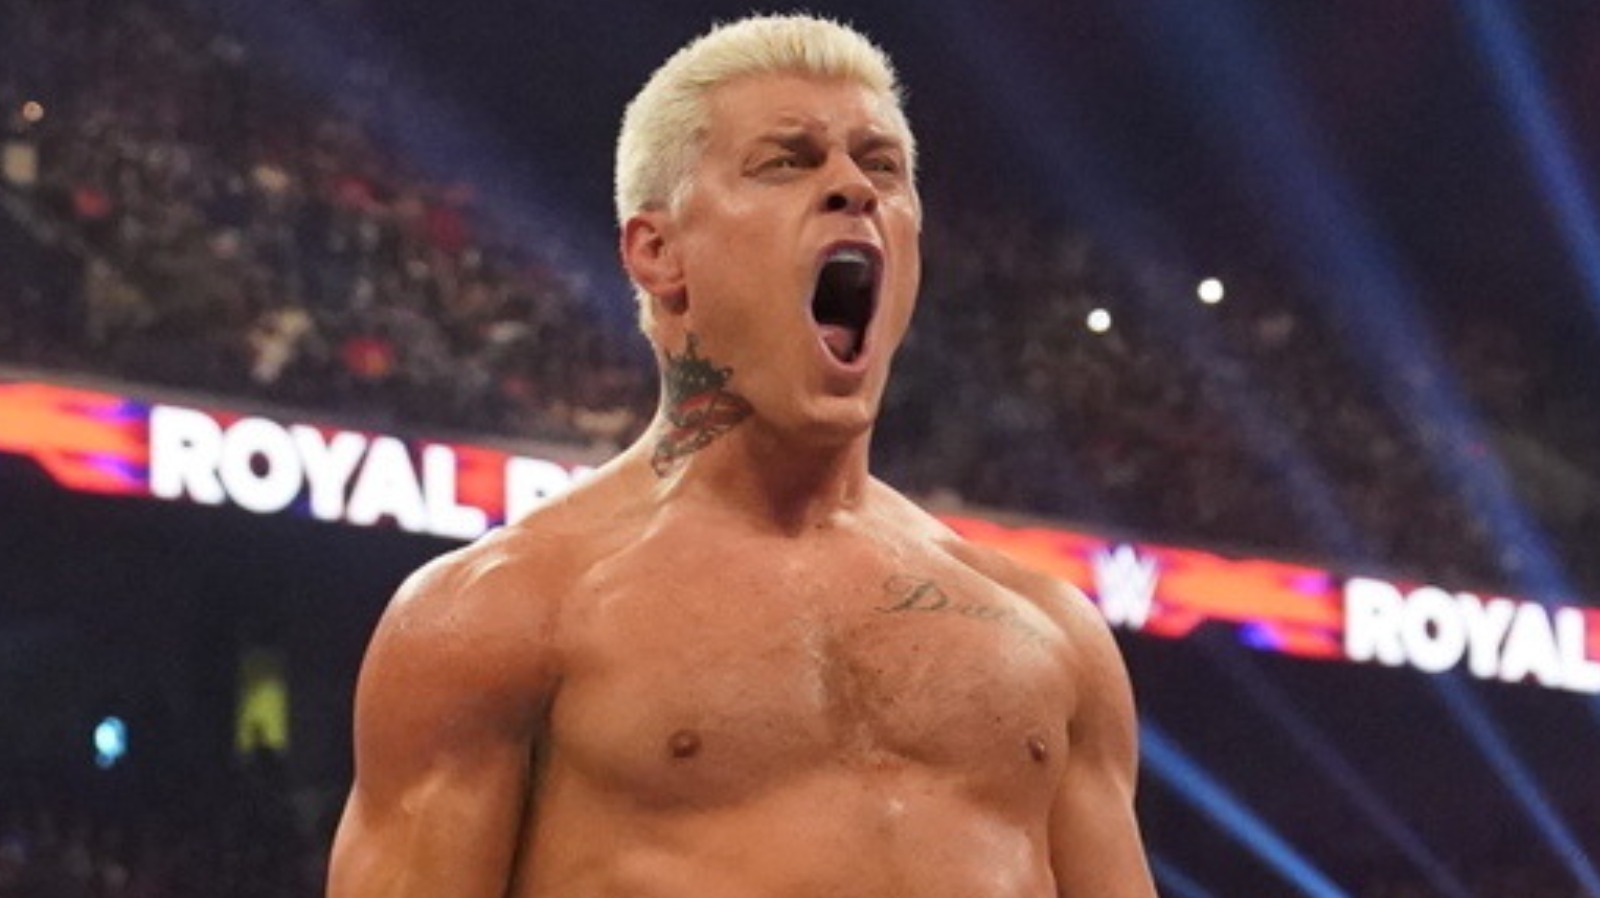 Cody Rhodes habla sobre el adelanto del título mundial de la WWE Winged Eagle